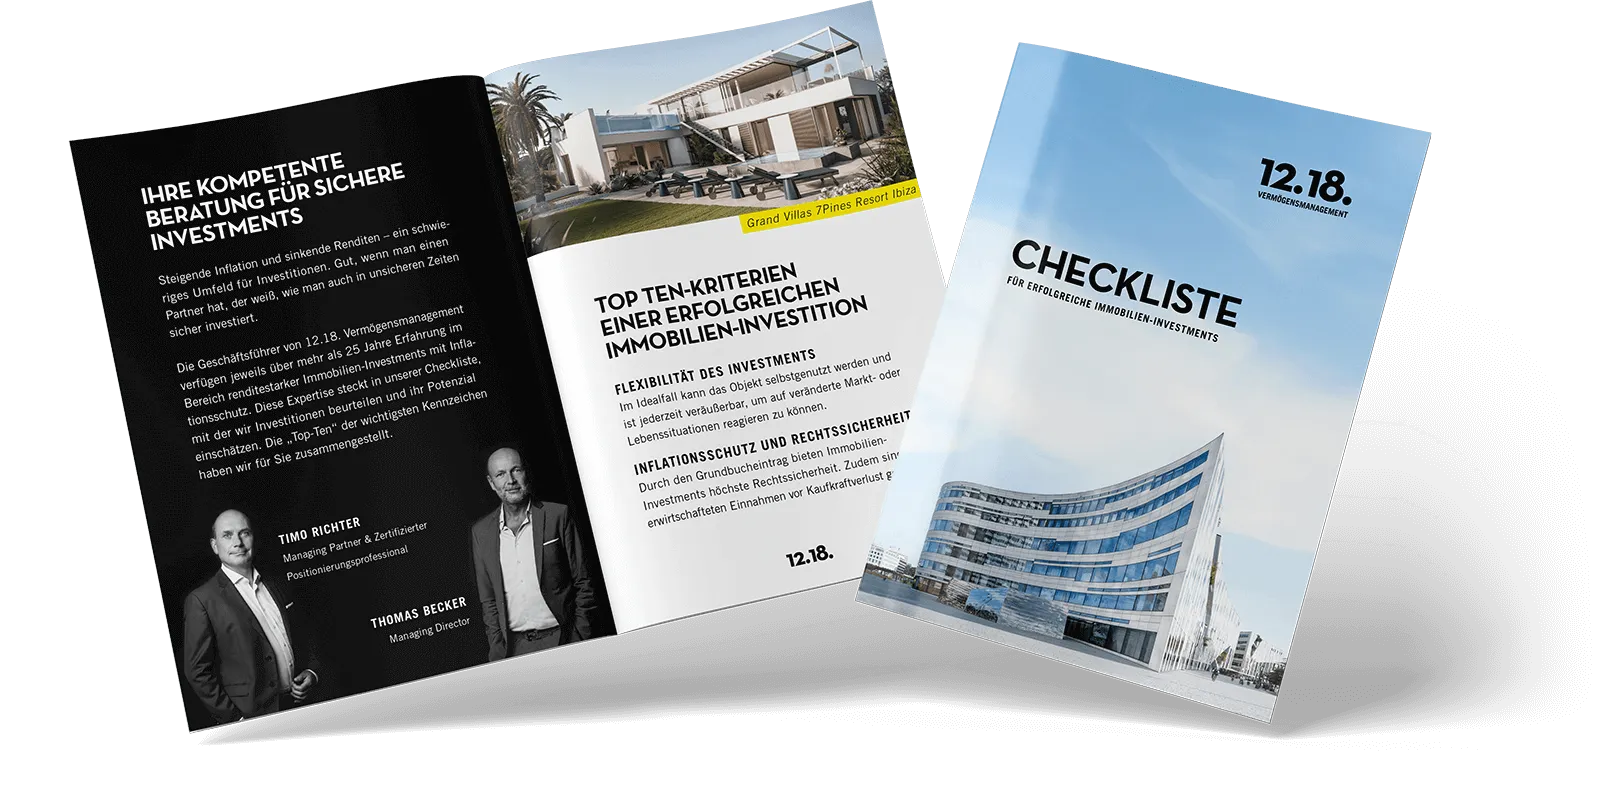 Checkliste mit Top-Ten-Kriterien für erfolgreiche Immobilien-Investments präsentiert von 12.18. Vermögensmanagement